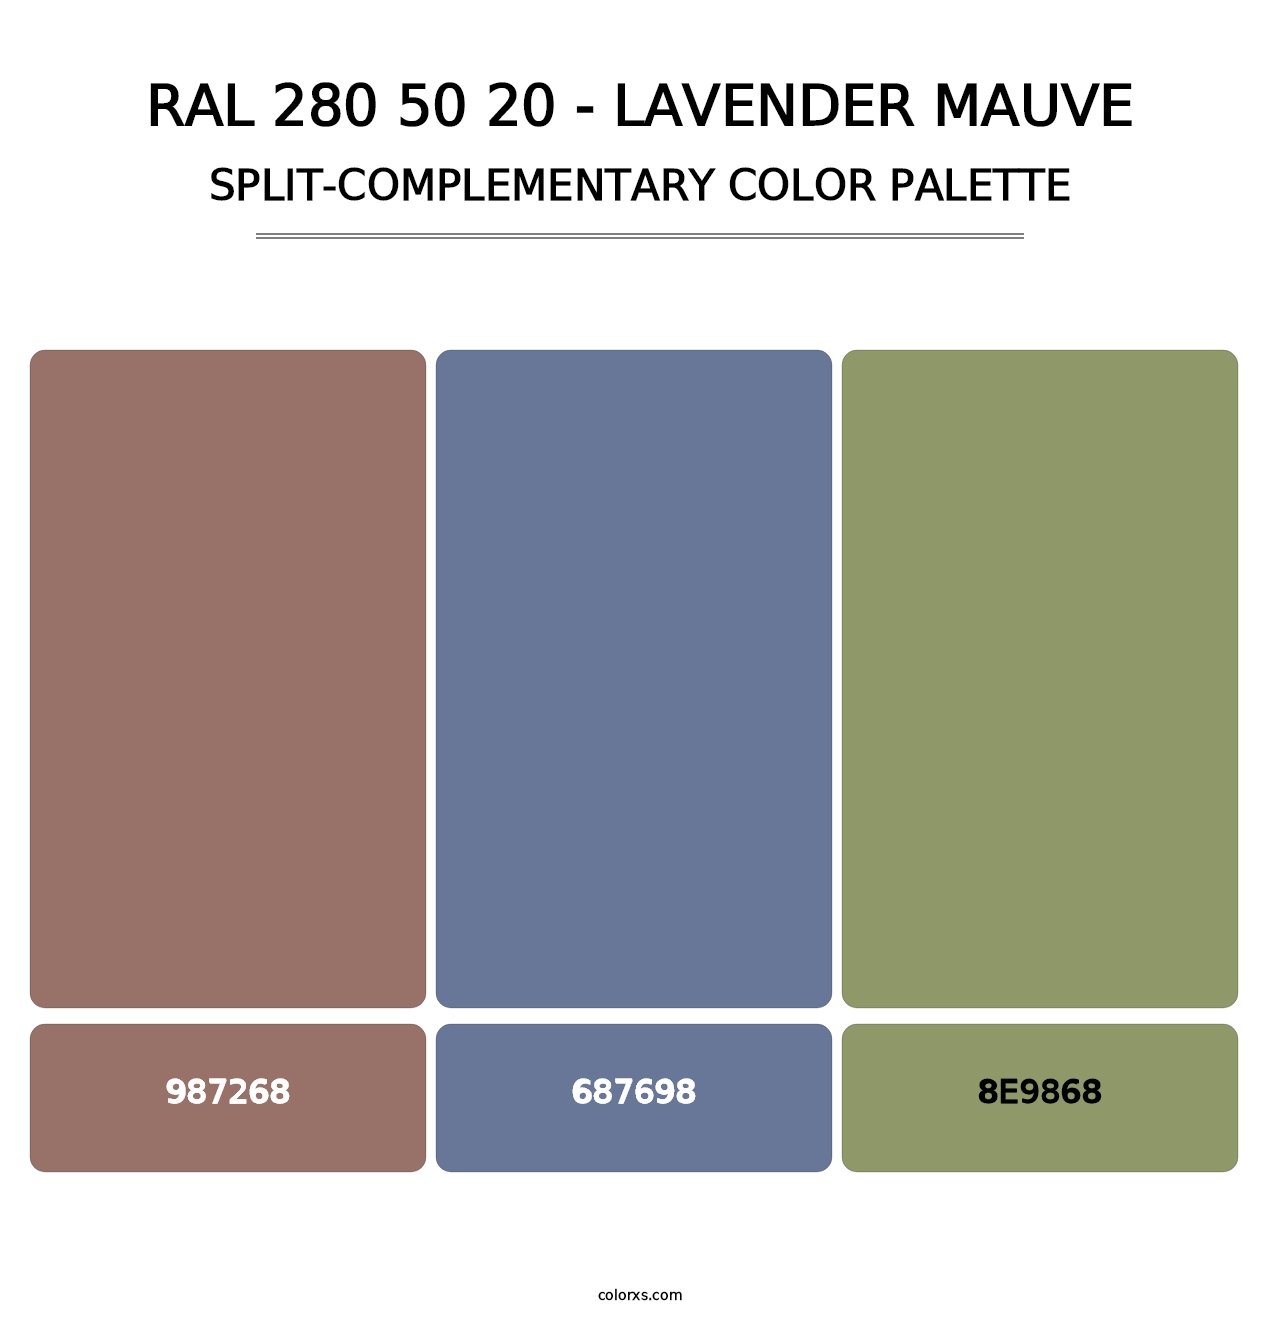 RAL 280 50 20 - Lavender Mauve - Split-Complementary Color Palette